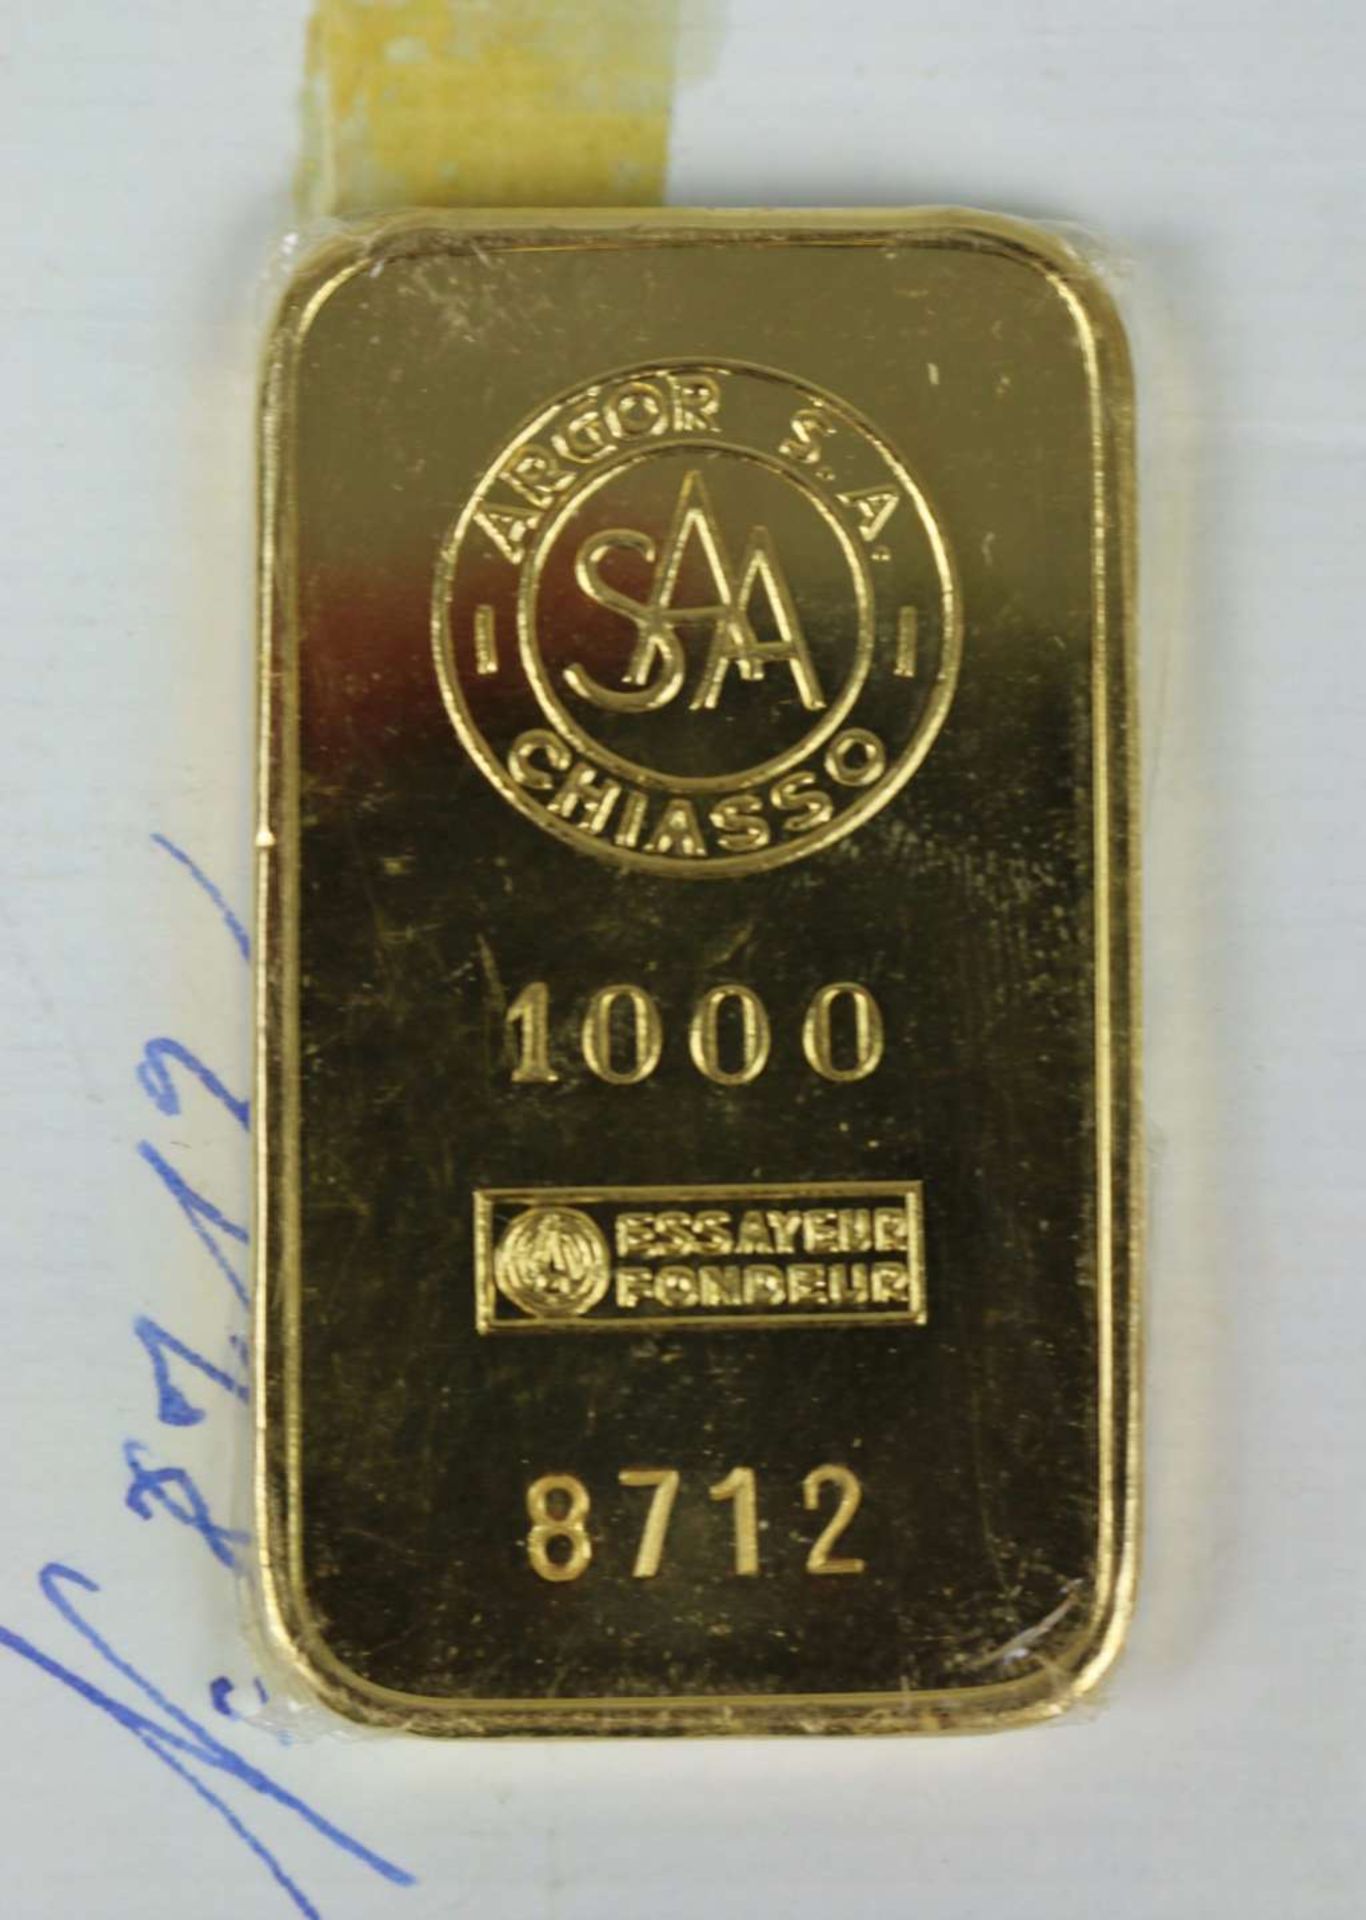 Goldbarren 100 Gramm bez. "ARGOR S.A. CHIASSO 1000 ESSAYEUR FONDEUR", Nr. 8712 von 1960 - Bild 2 aus 2